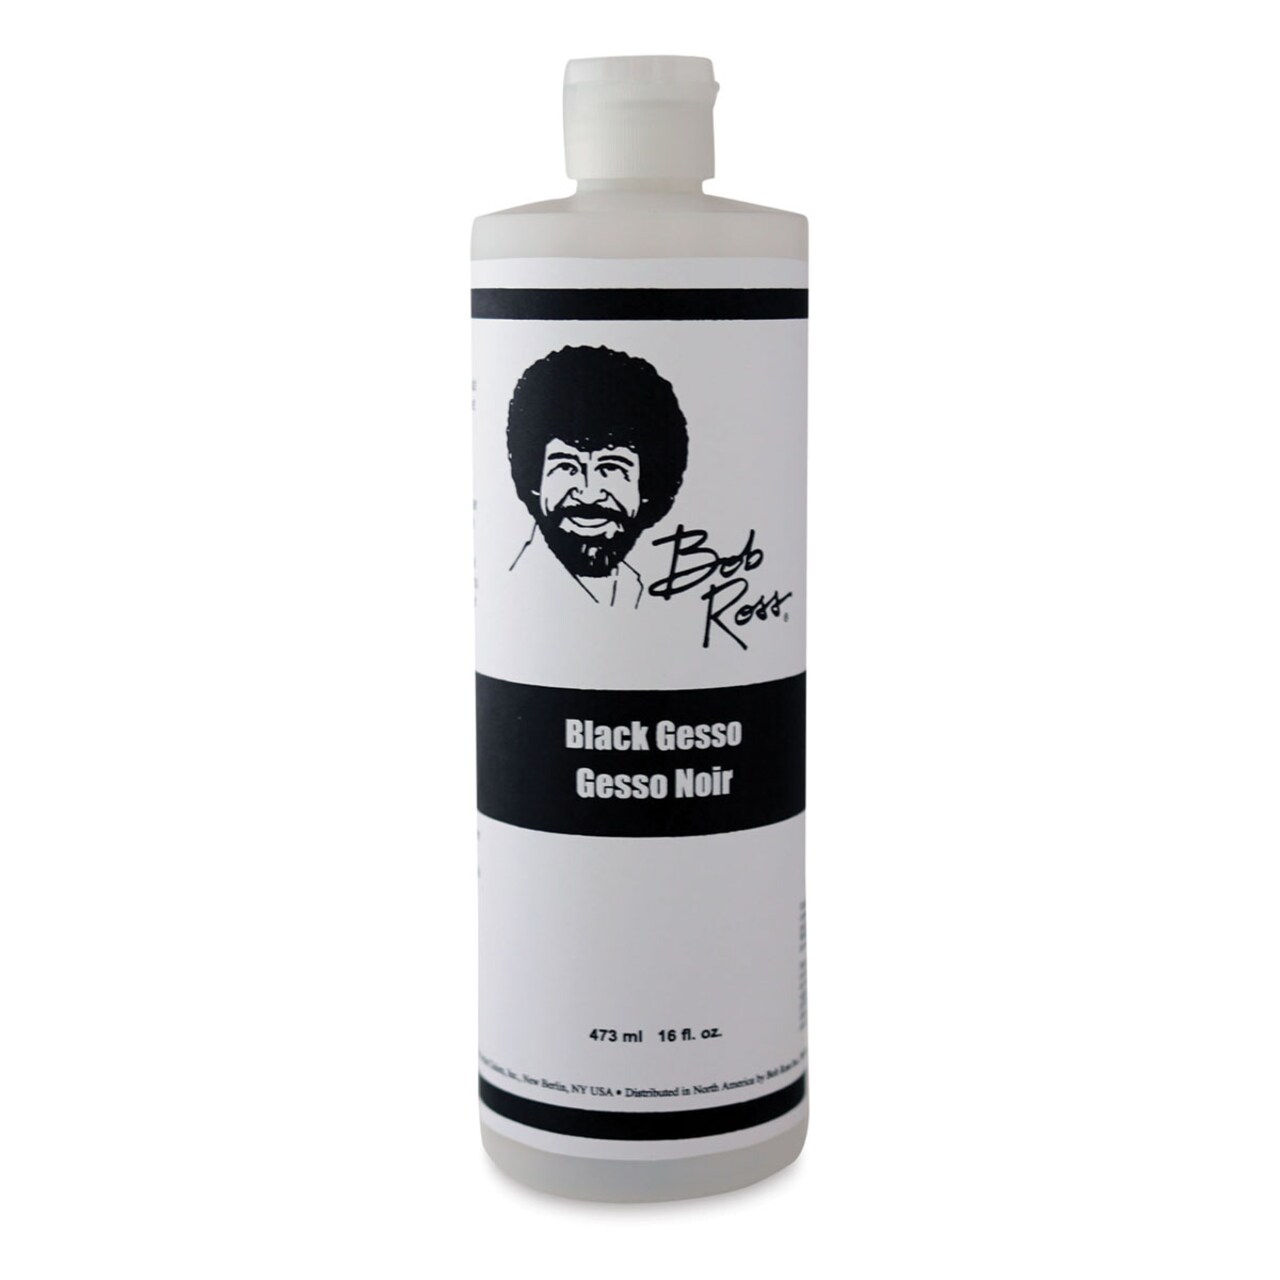 Bob Ross Gesso - Black, 16 oz bottle